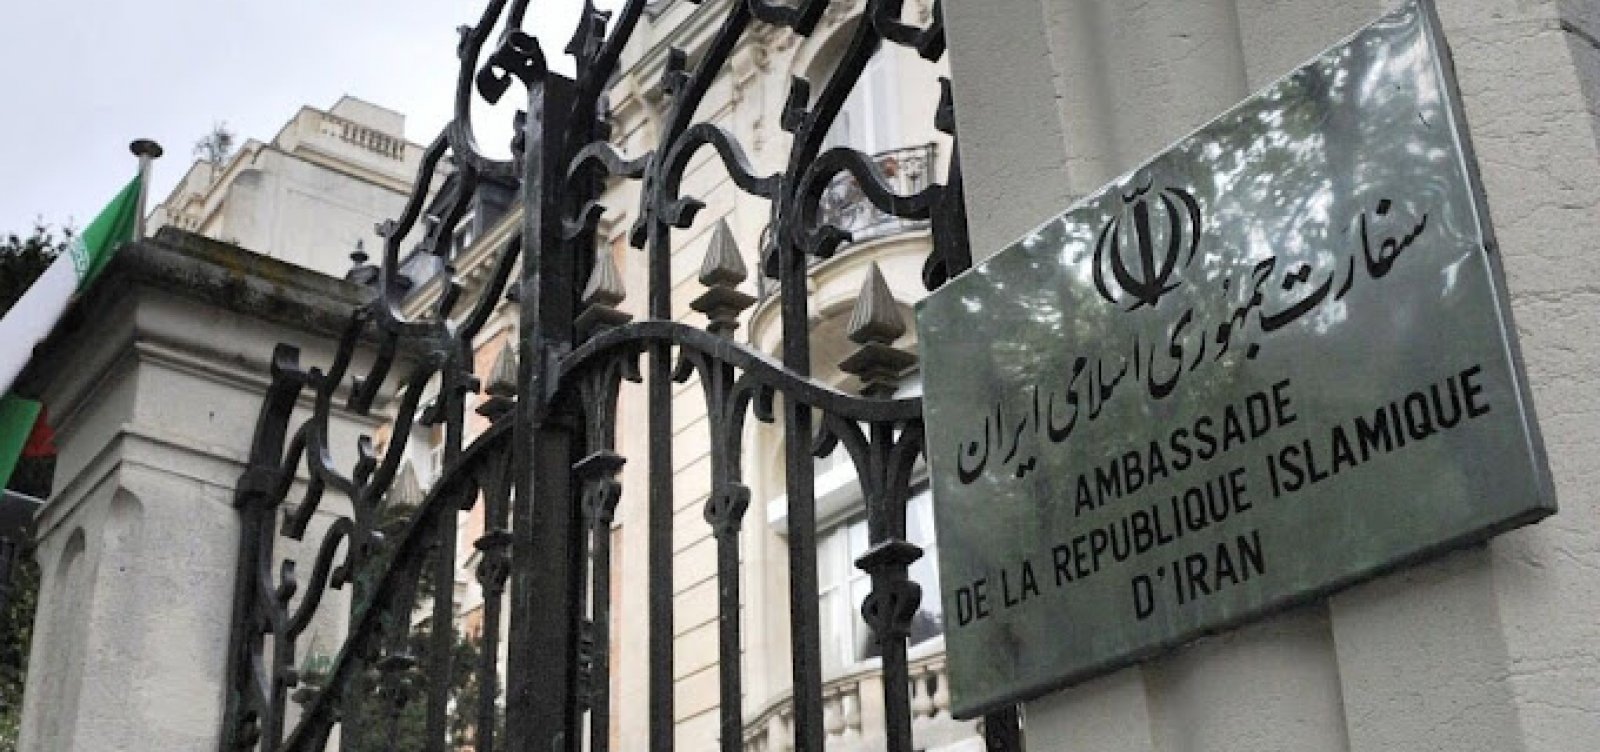 Homem é preso sob suspeita de entrar com explosivos na embaixada iraniana em Paris